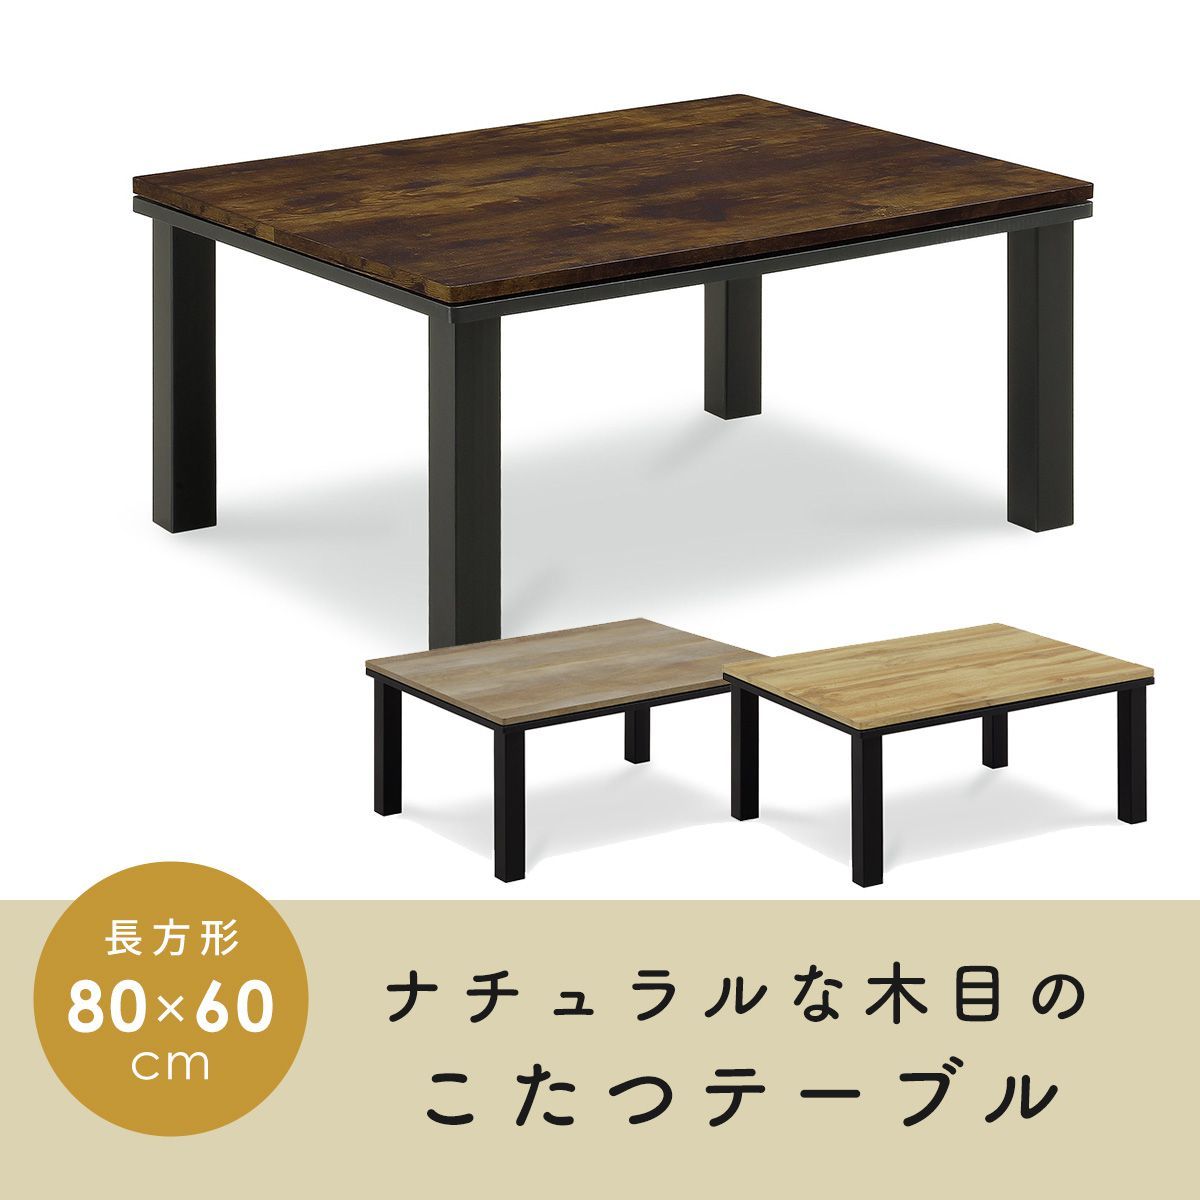 こたつ テーブル 長方形 コタツ 炬燵 80×60cm コンパクト 暖卓 